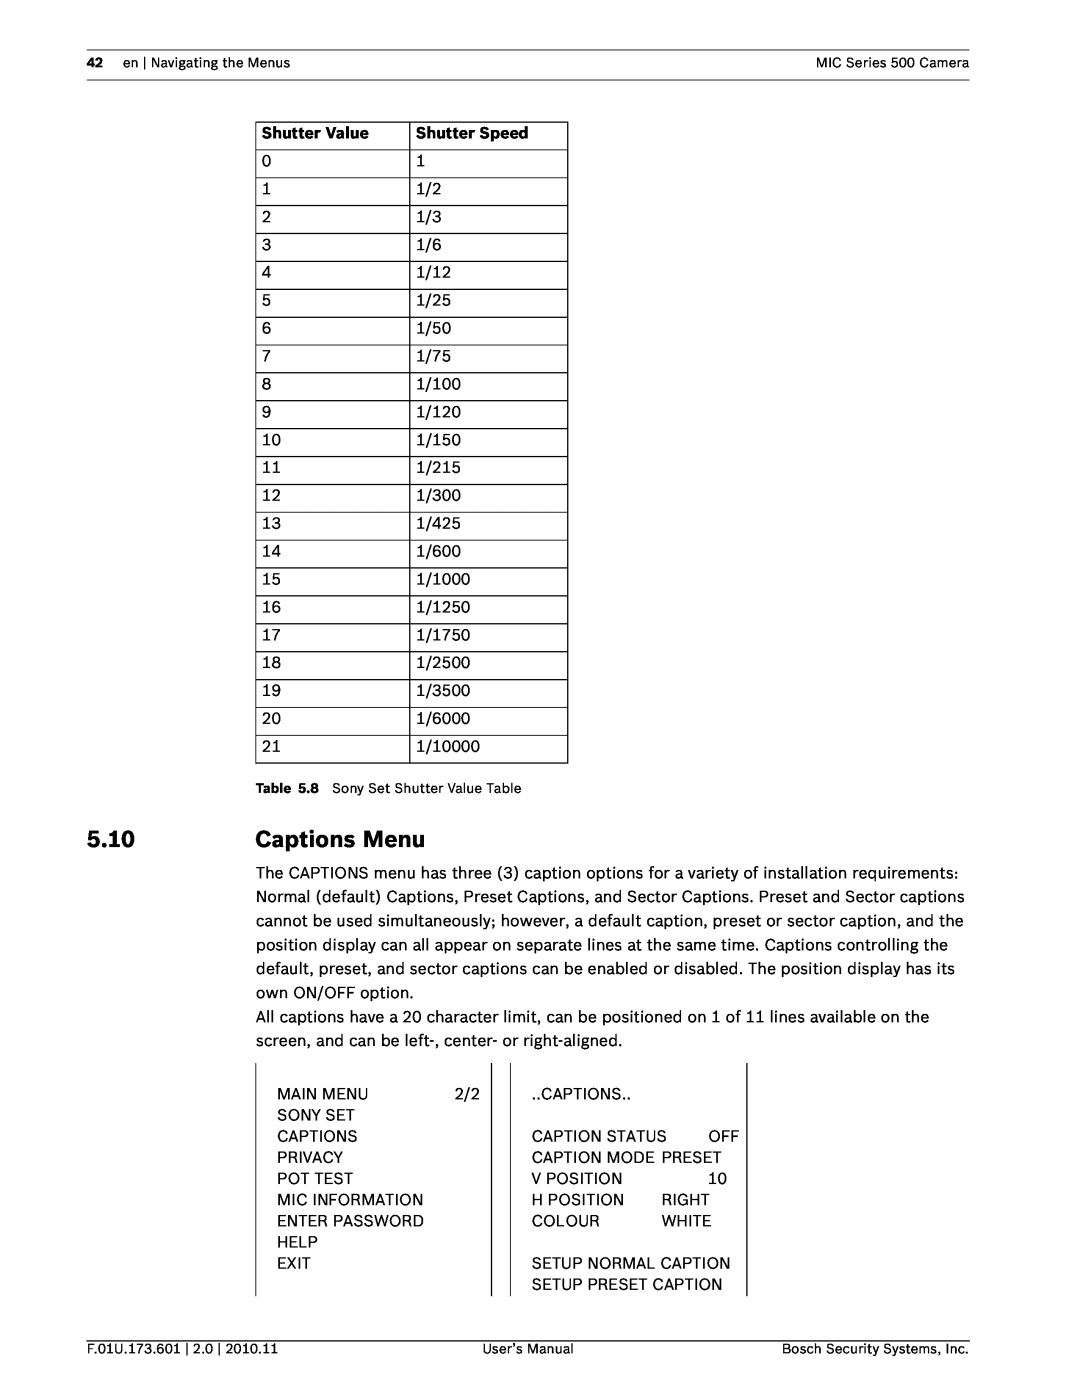 Bosch Appliances 500 user manual 5.10, Captions Menu, Shutter Value, Shutter Speed 